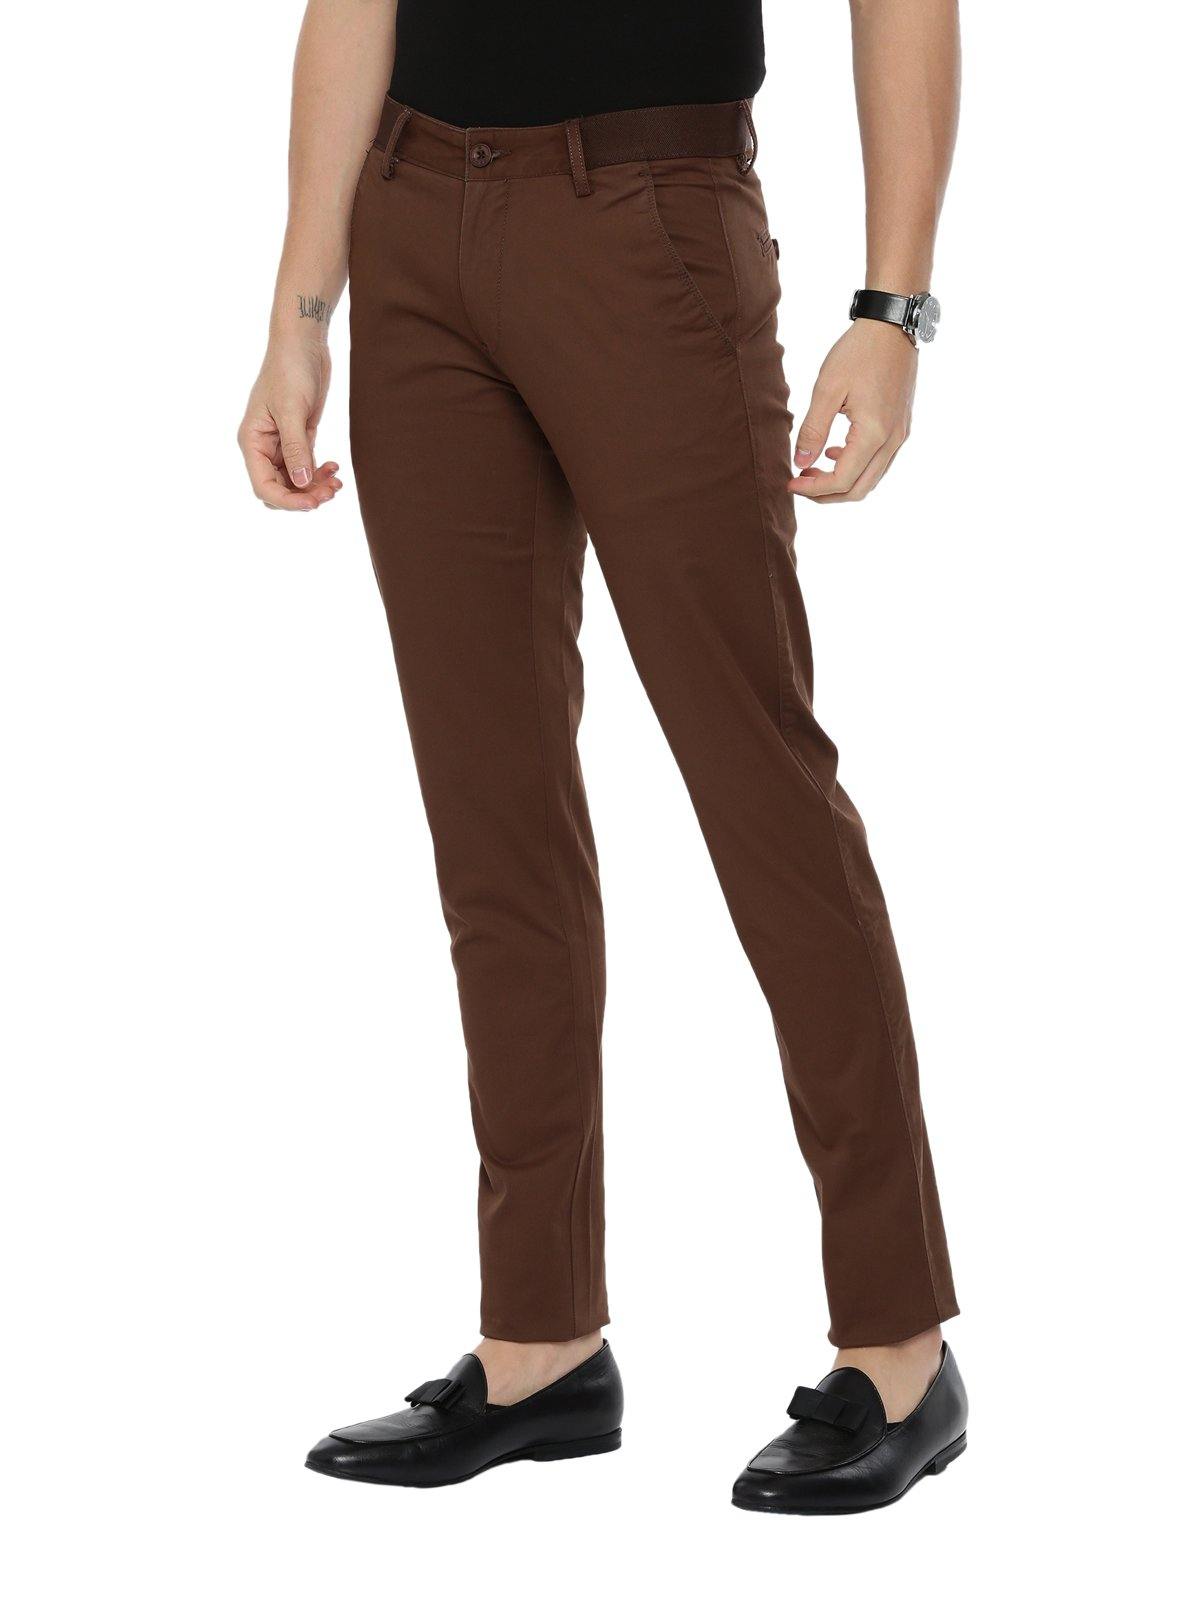 Cotton Lycra Sapphire Pant... | Women pants pattern, Trousers women,  Fashion pants